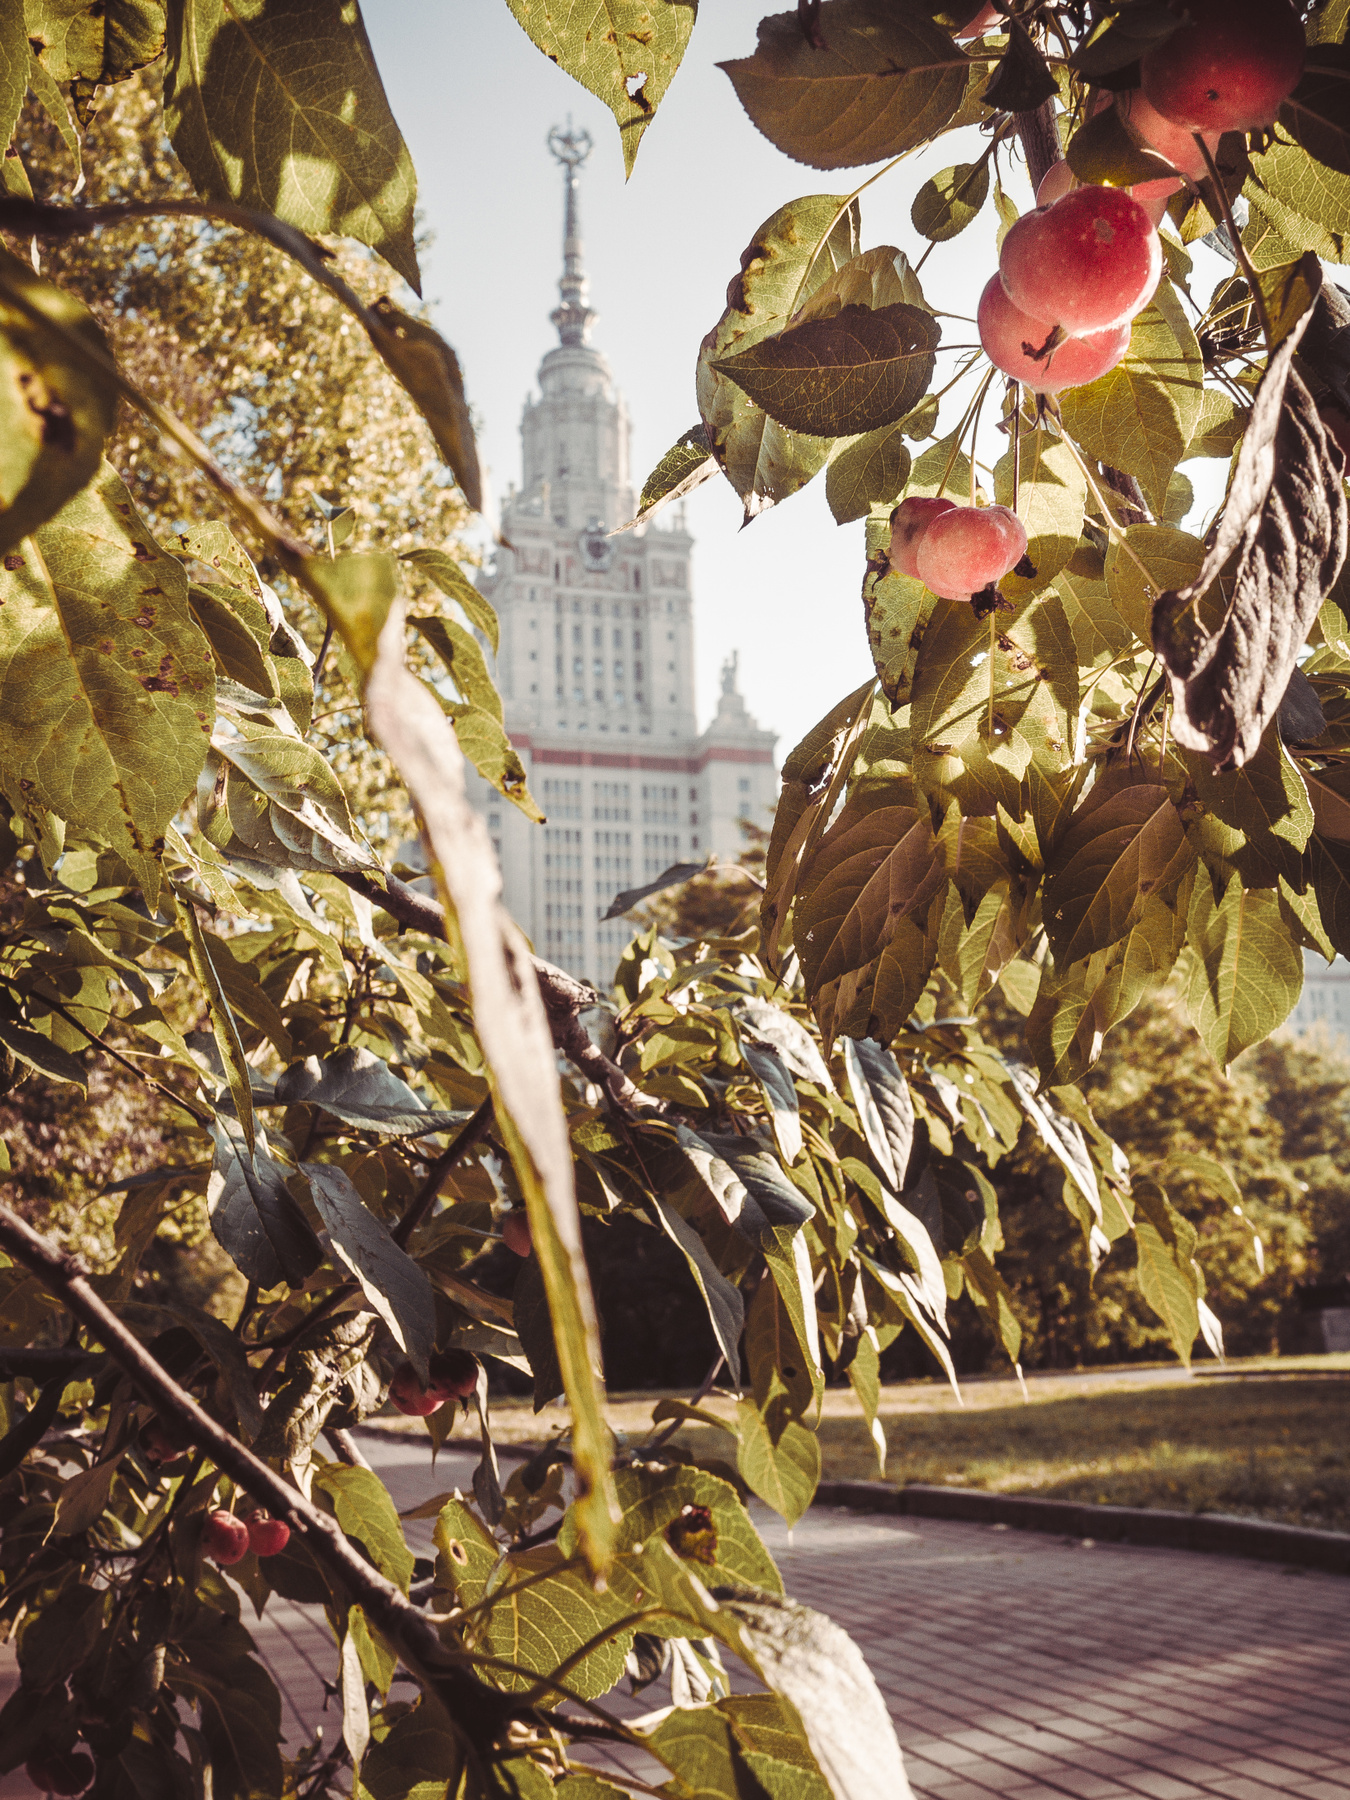 *** осень город мгу природа тепло листья трава растения деревья яблони яблоки солнце утро